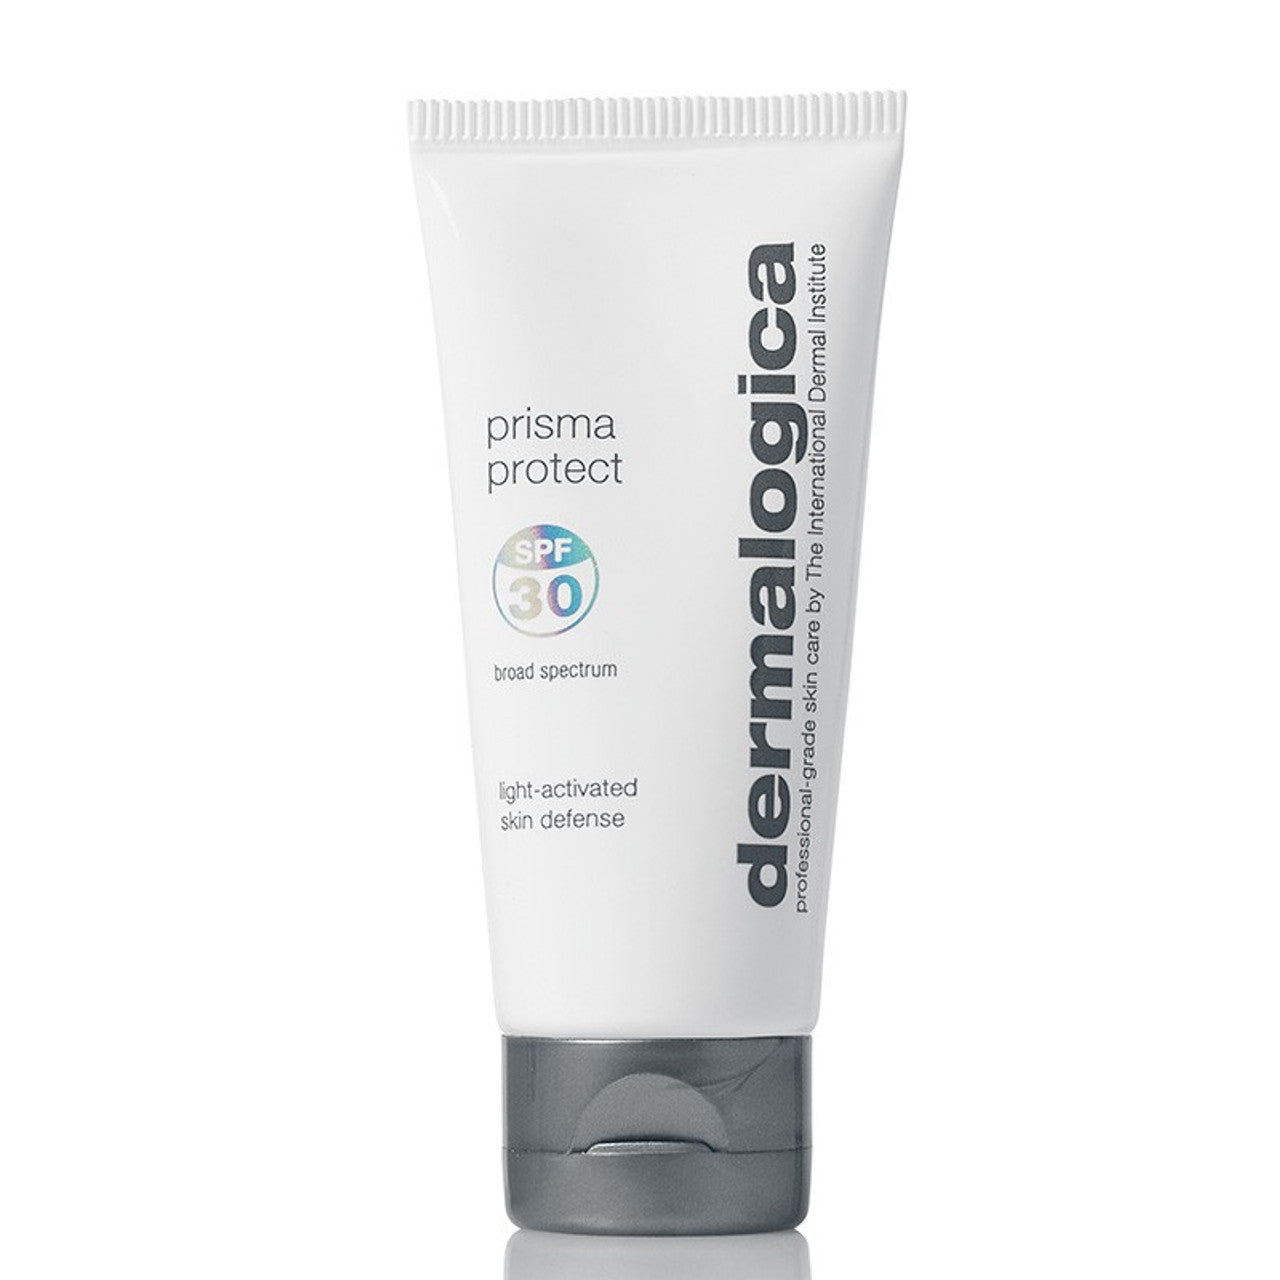 Dermalogica Prisma Protect SPF 30 - 12 ml - Emerald Beauty & Spa